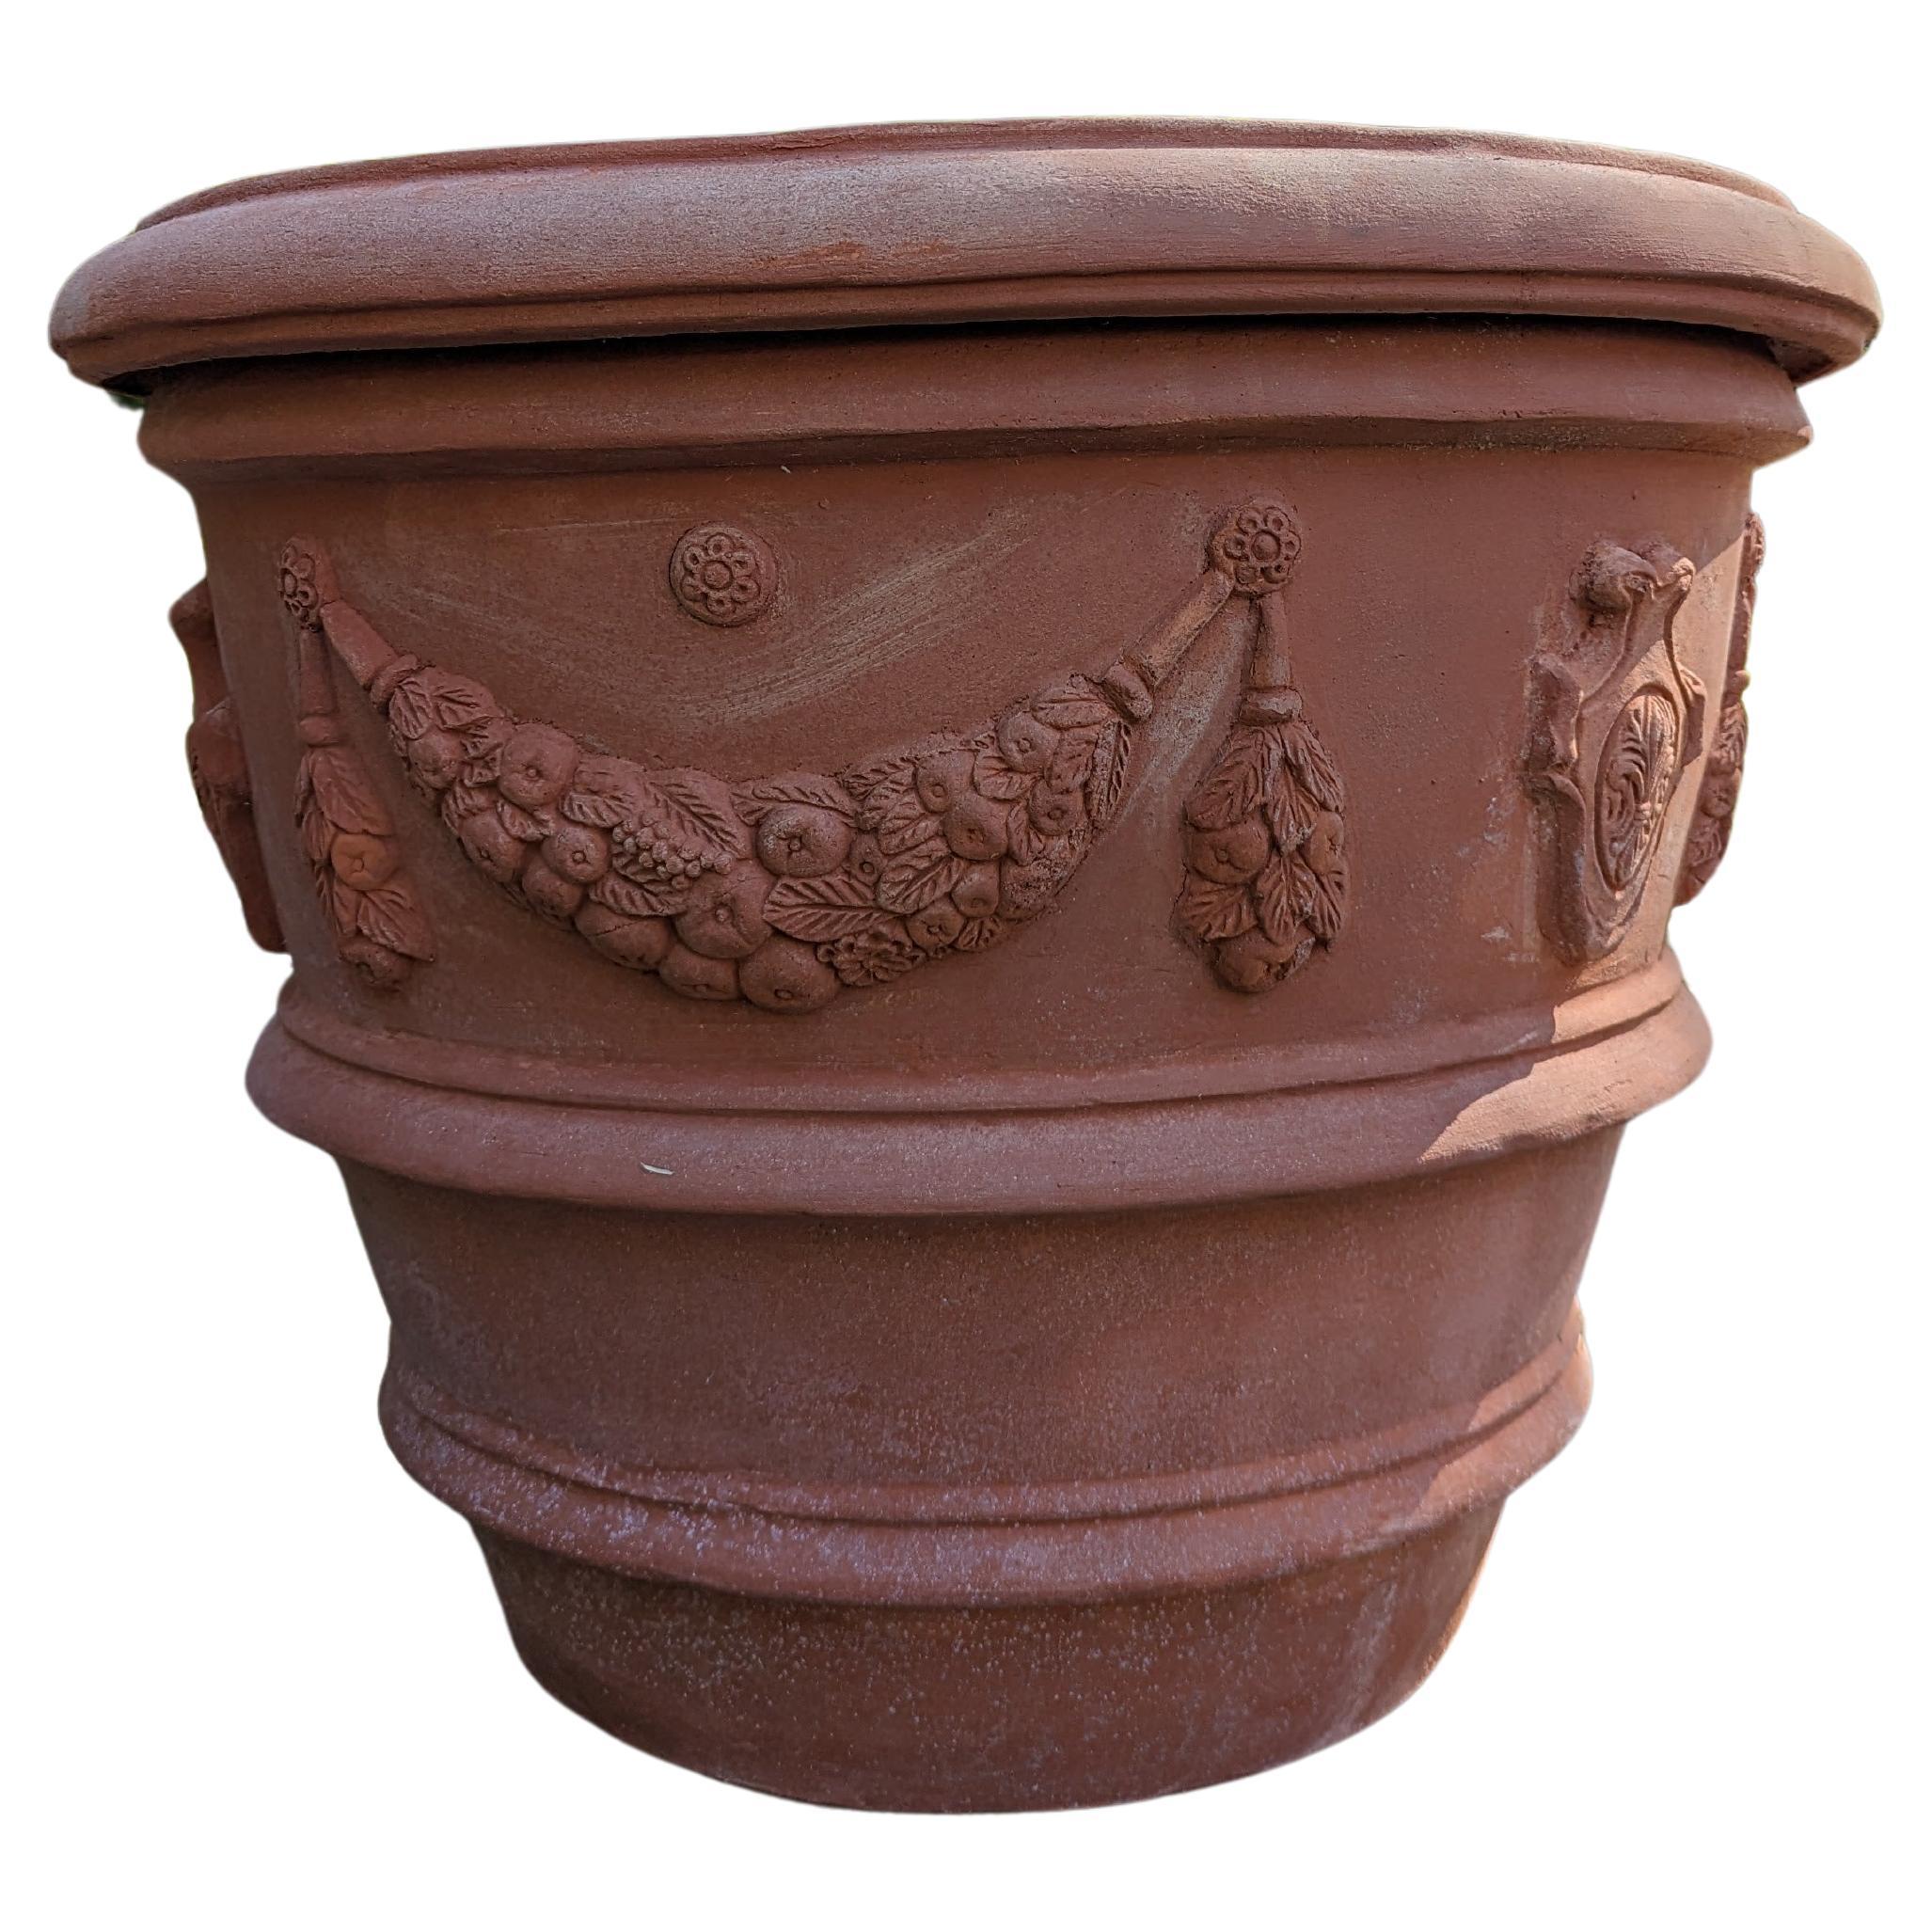 Italian "Firenze" Impruneta Terracotta Pot (70cm)